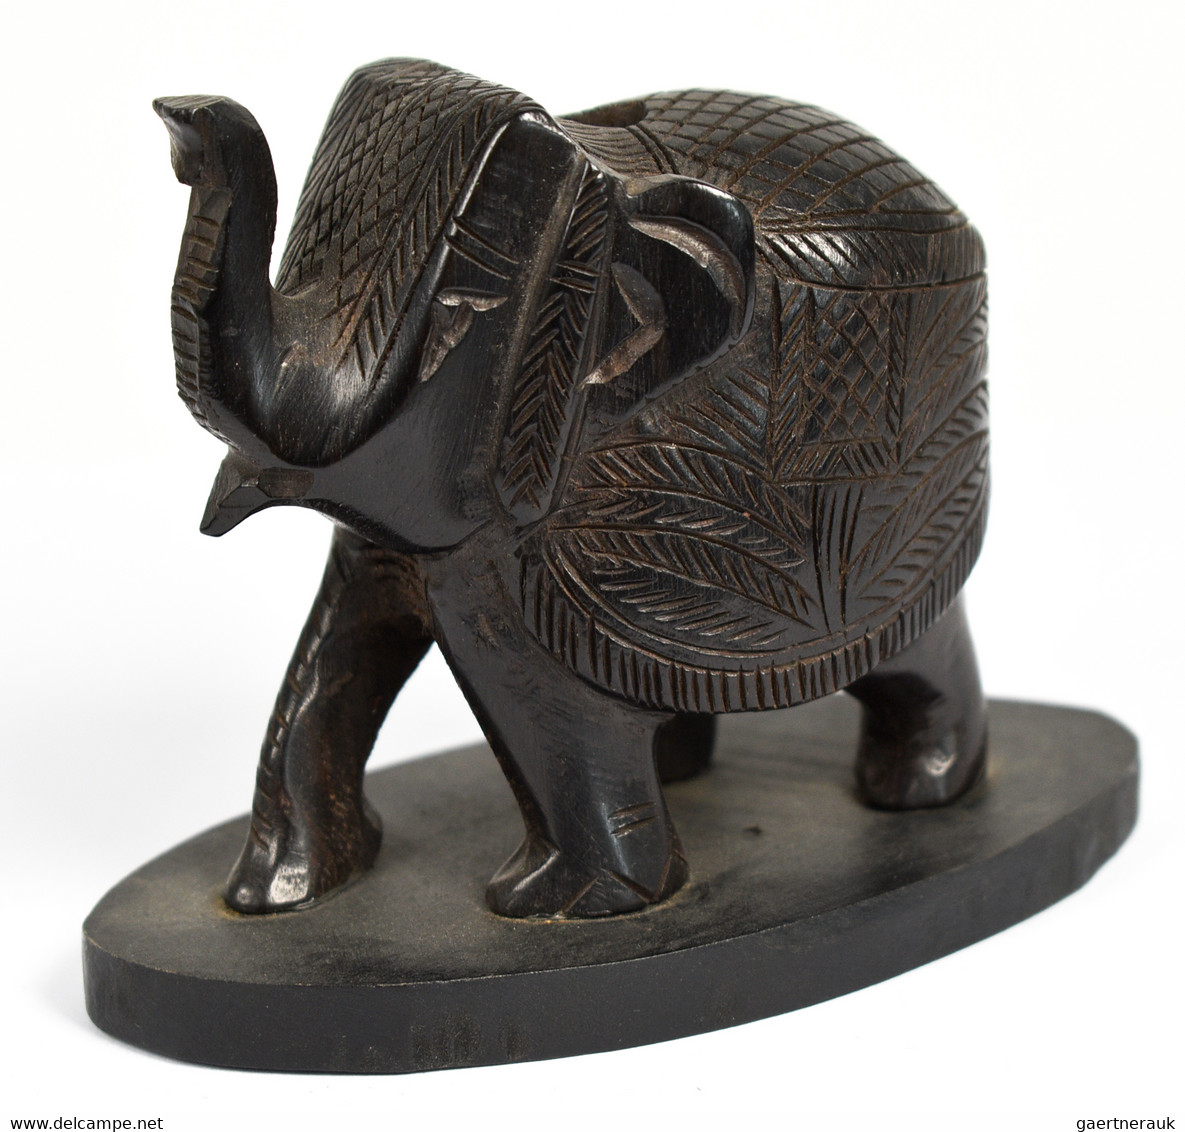 Varia (im Briefmarkenkatalog): ELEFANTEN, ca. 290 Elefantenfiguren in allen erdenklichen Variationen